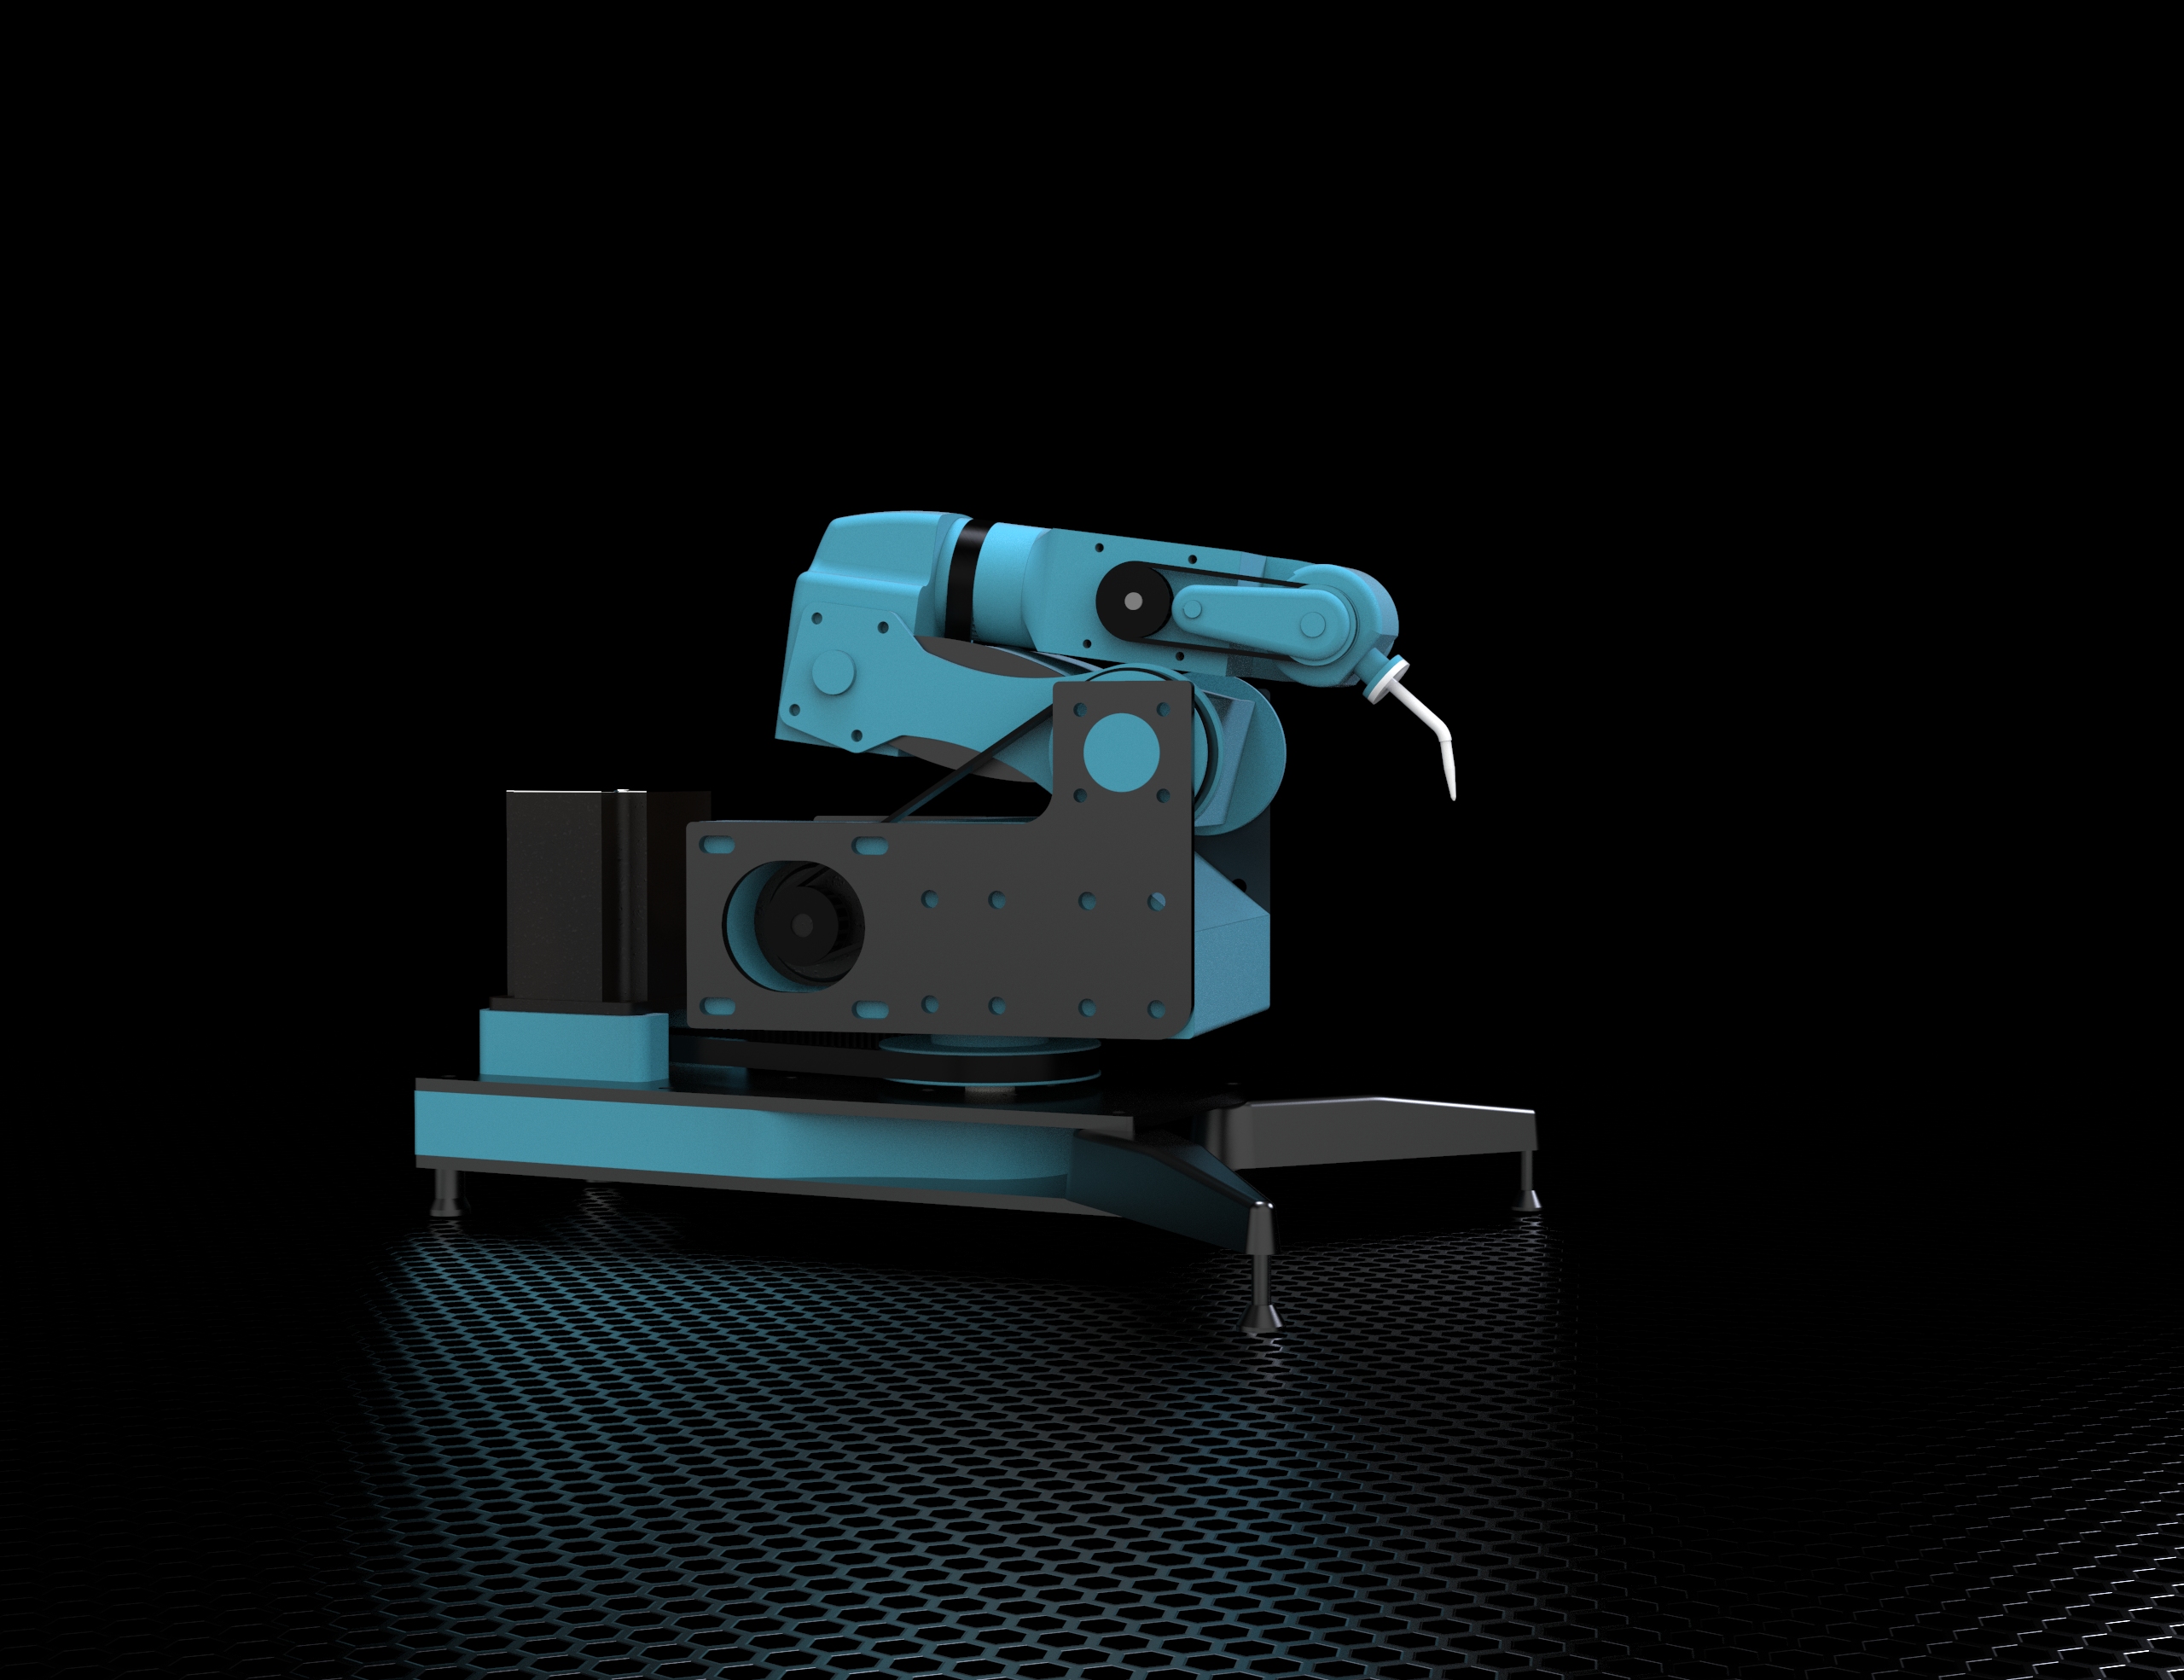 6自由度机械臂 6Dof Robot Arm